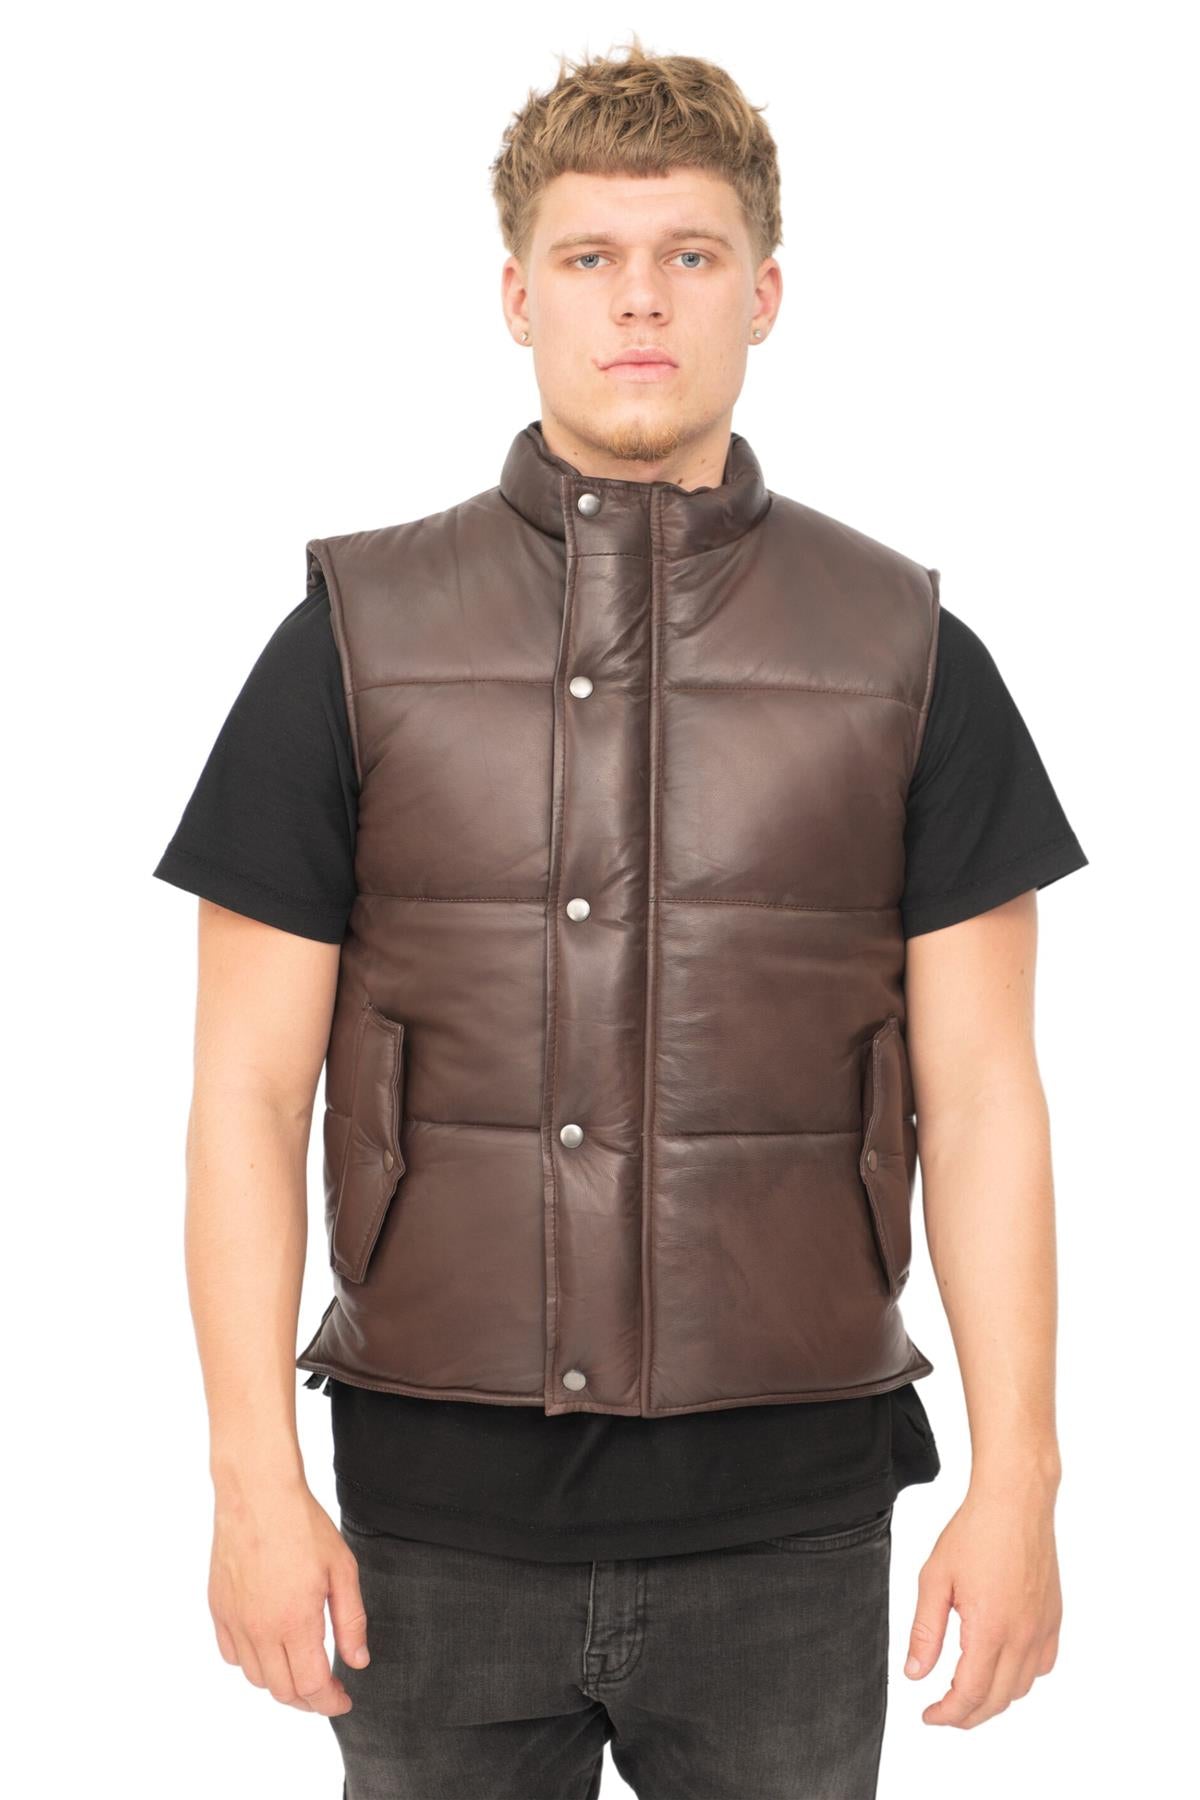 Mens Classic Leather Puffer Waistcoat-Nottingham